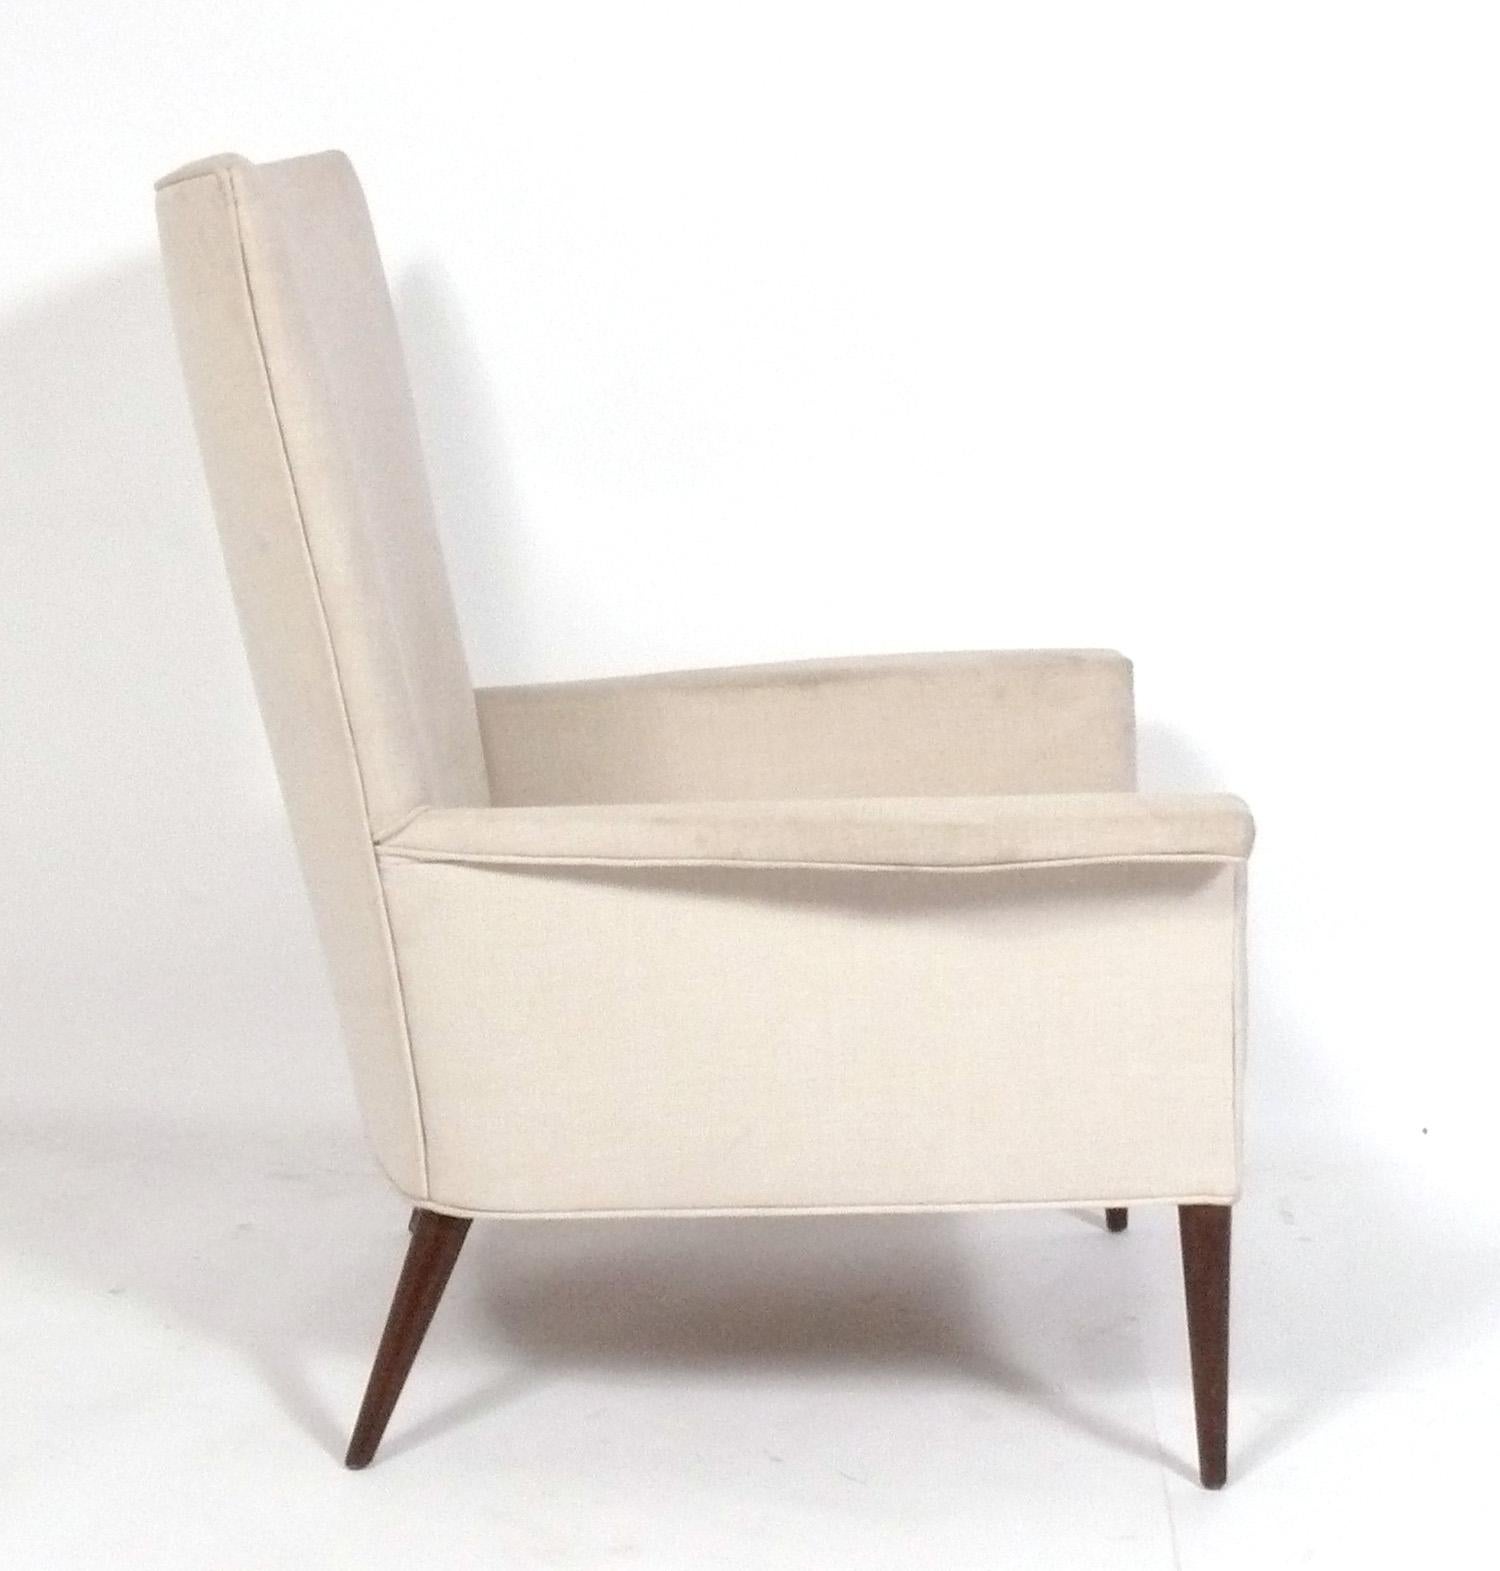 Paire de chaises longues du milieu du siècle, aux lignes épurées, conçues par Paul McCobb pour CustomCraft, États-Unis, vers les années 1950. Ces chaises sont en train d'être remises à neuf et retapissées. Elles peuvent être finies dans la couleur